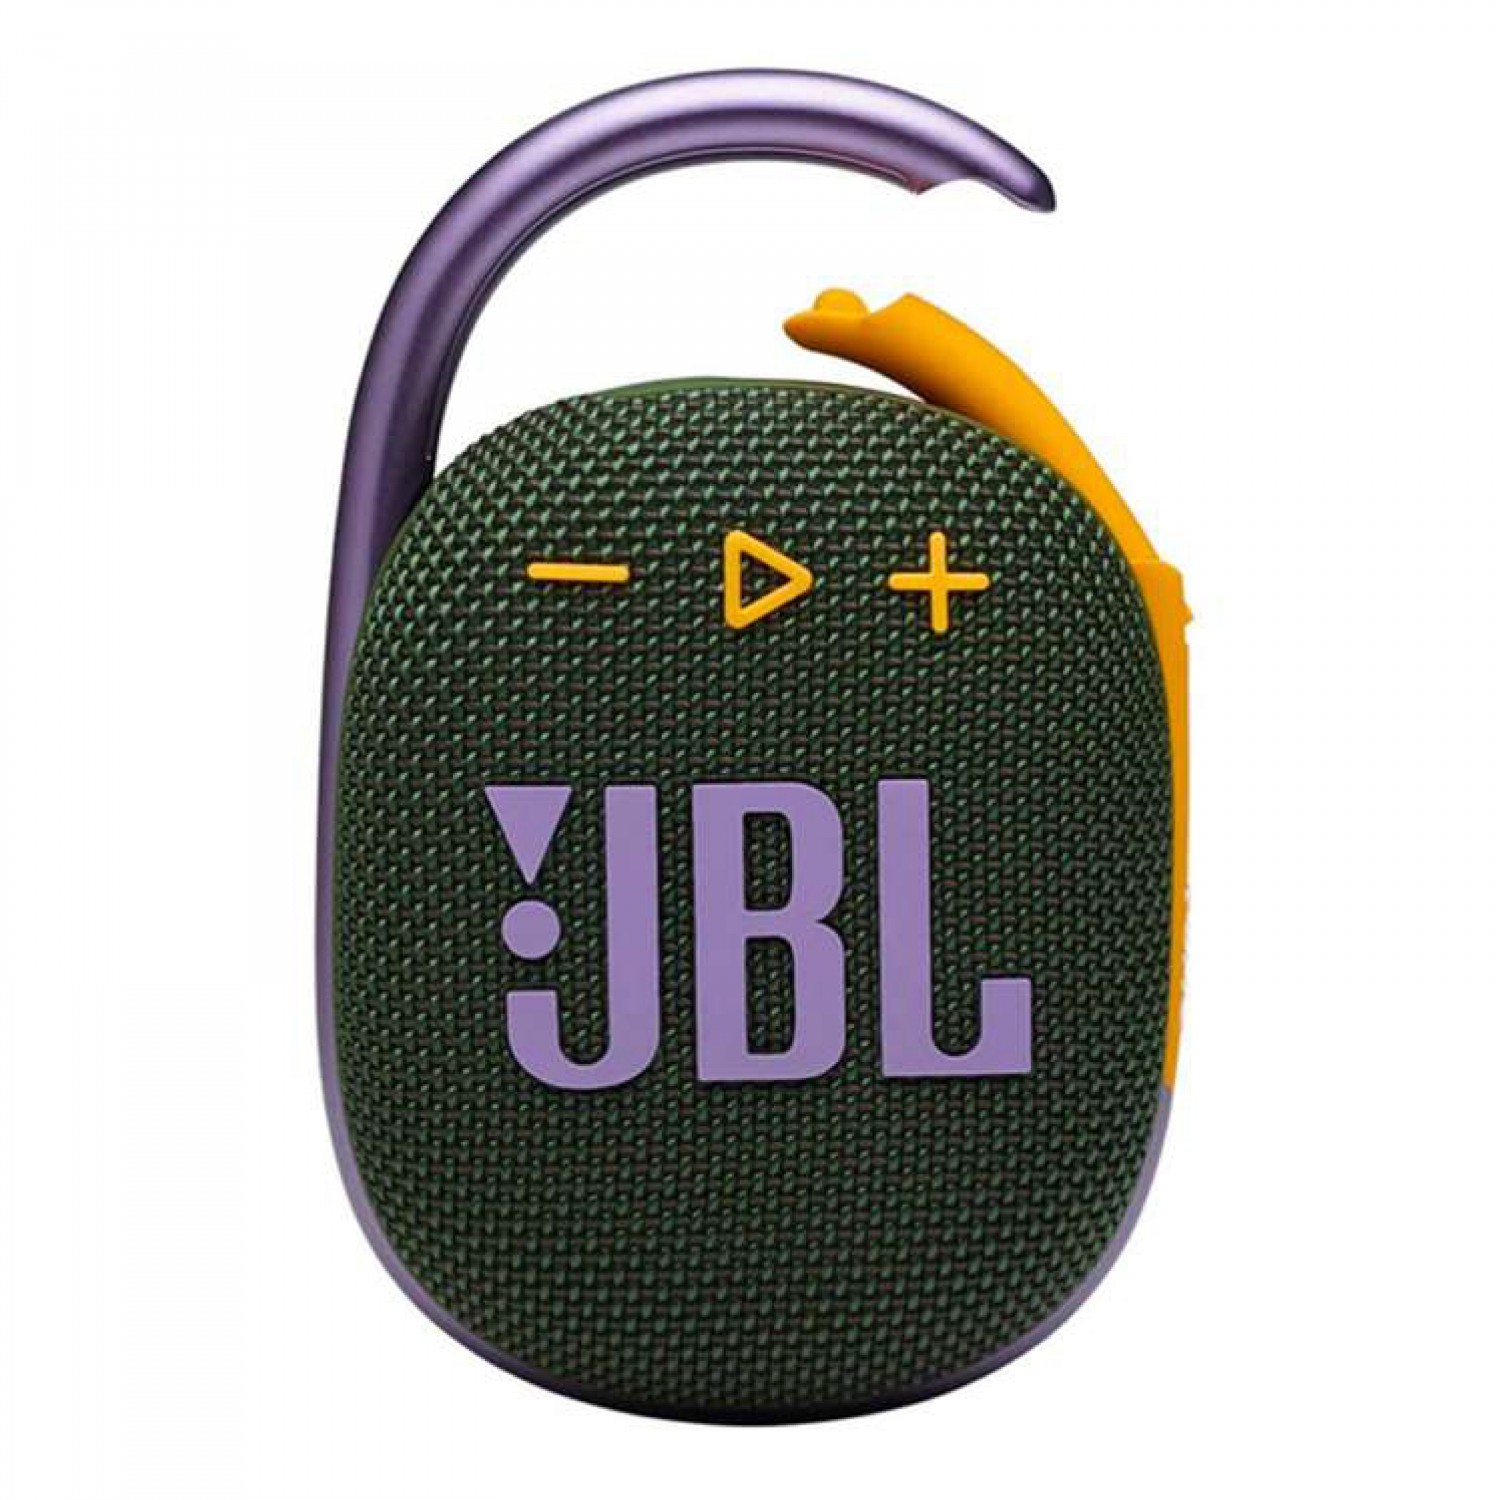 JBL CLIP4 WIRELESS PORTABLE SPEAKER- Green - Audio Shop Nepal